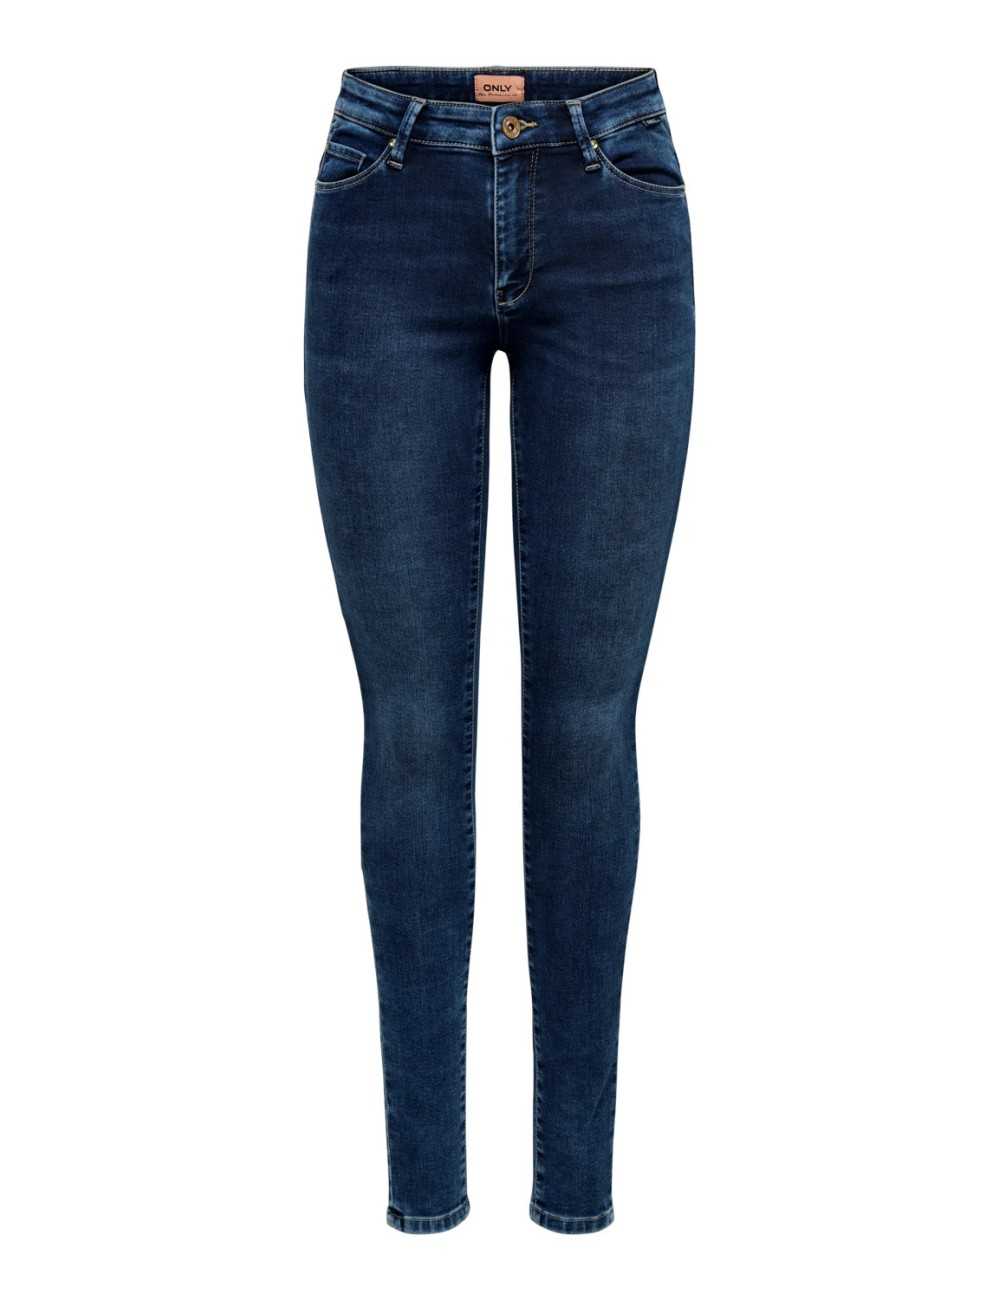 Only Jeans Carmen Life Skinny fit donna blu - Jeans & Pantaloni Donna